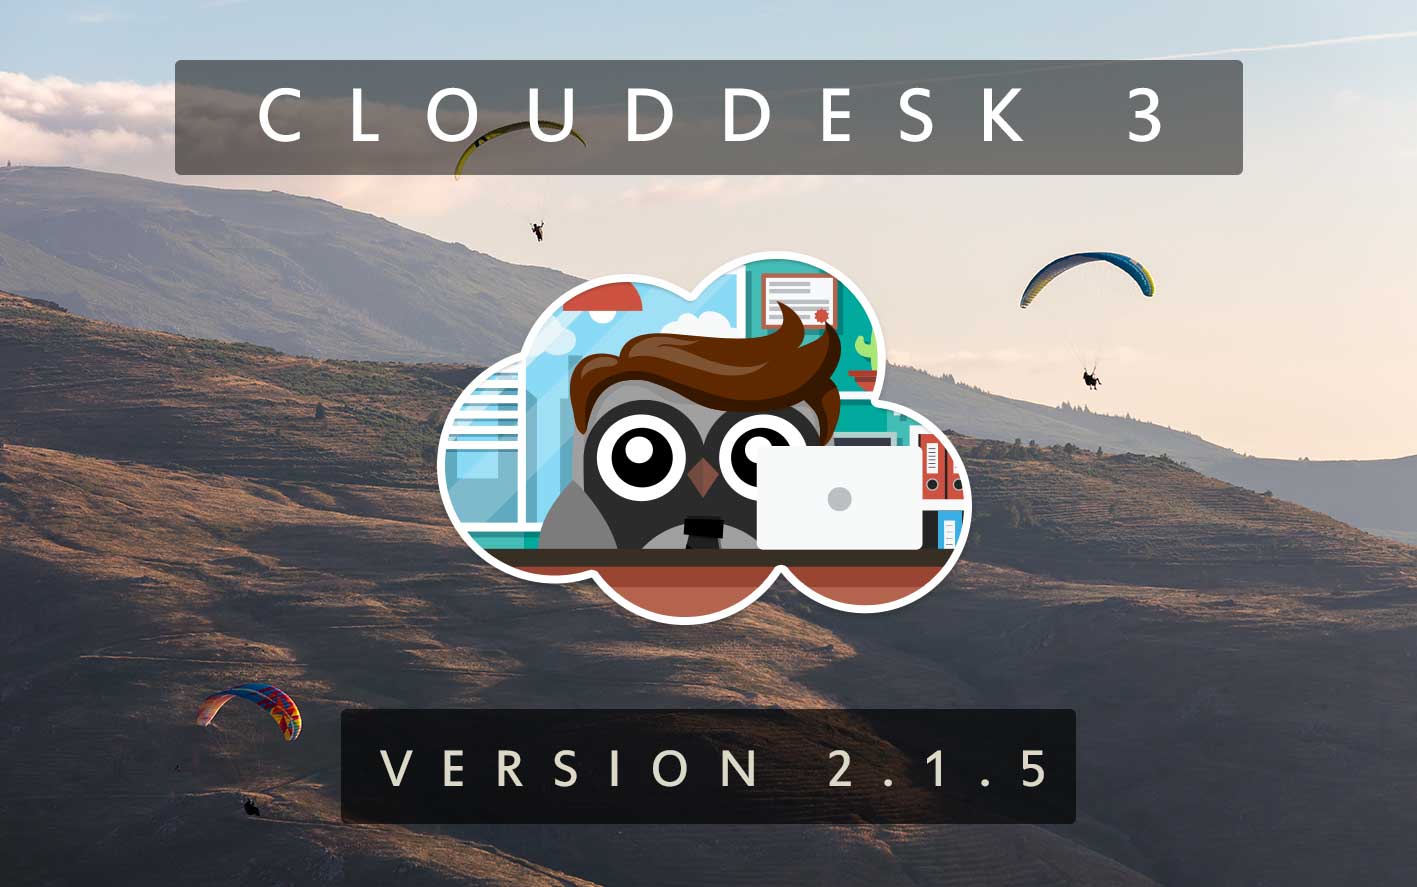 Cloud Desk 3 - Version 2.1.5